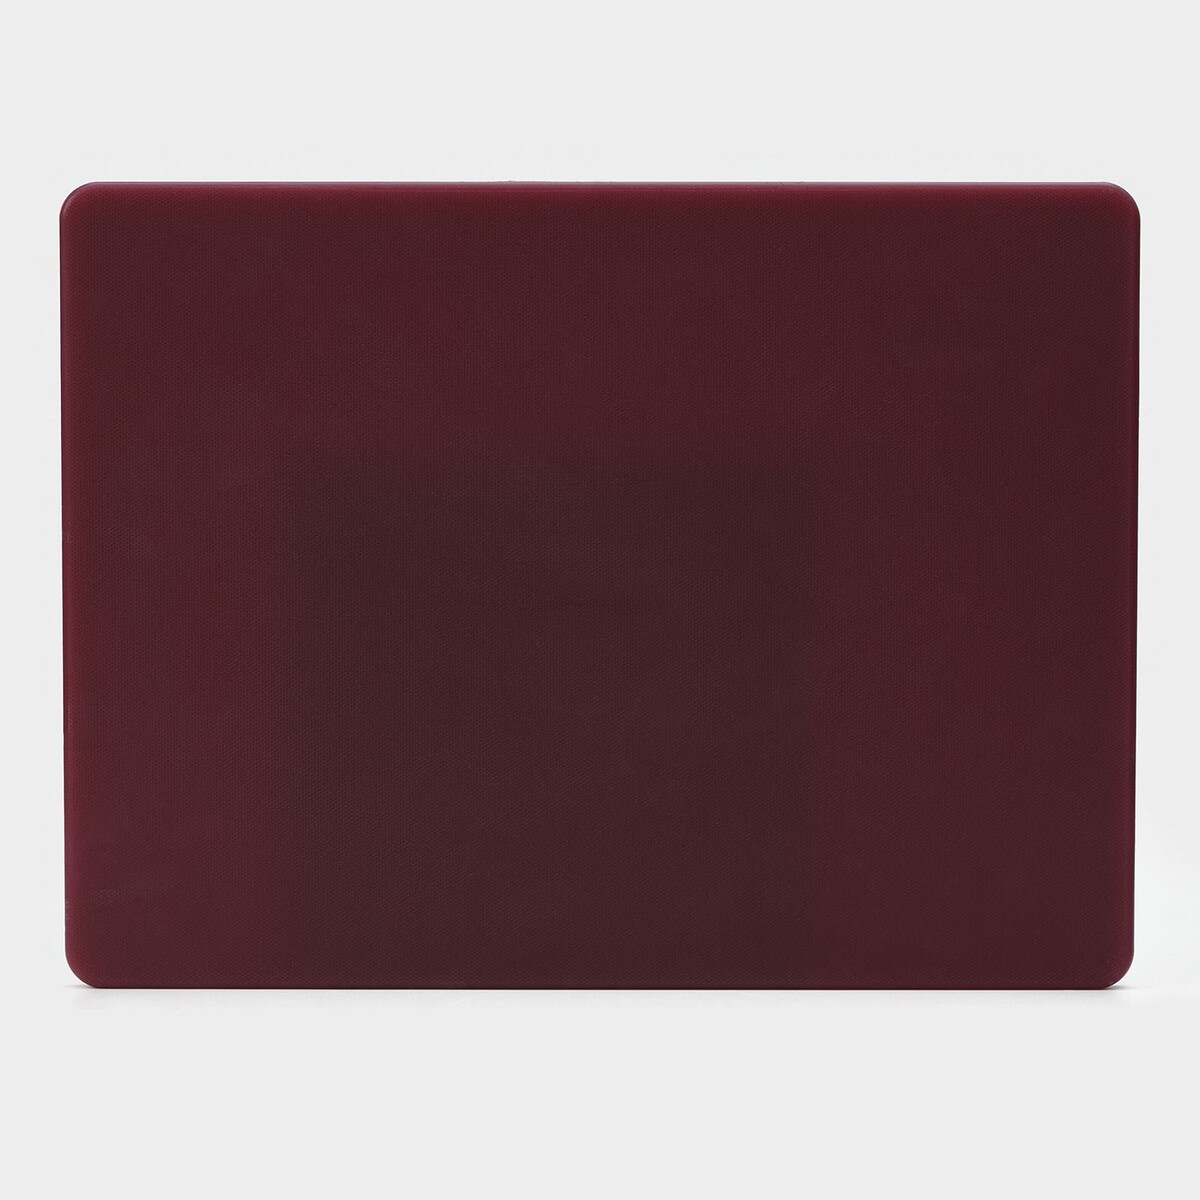 фото Доска профессиональная разделочная, 40×30 см, толщина 1,2 см, цвет бордовый hanna knövell